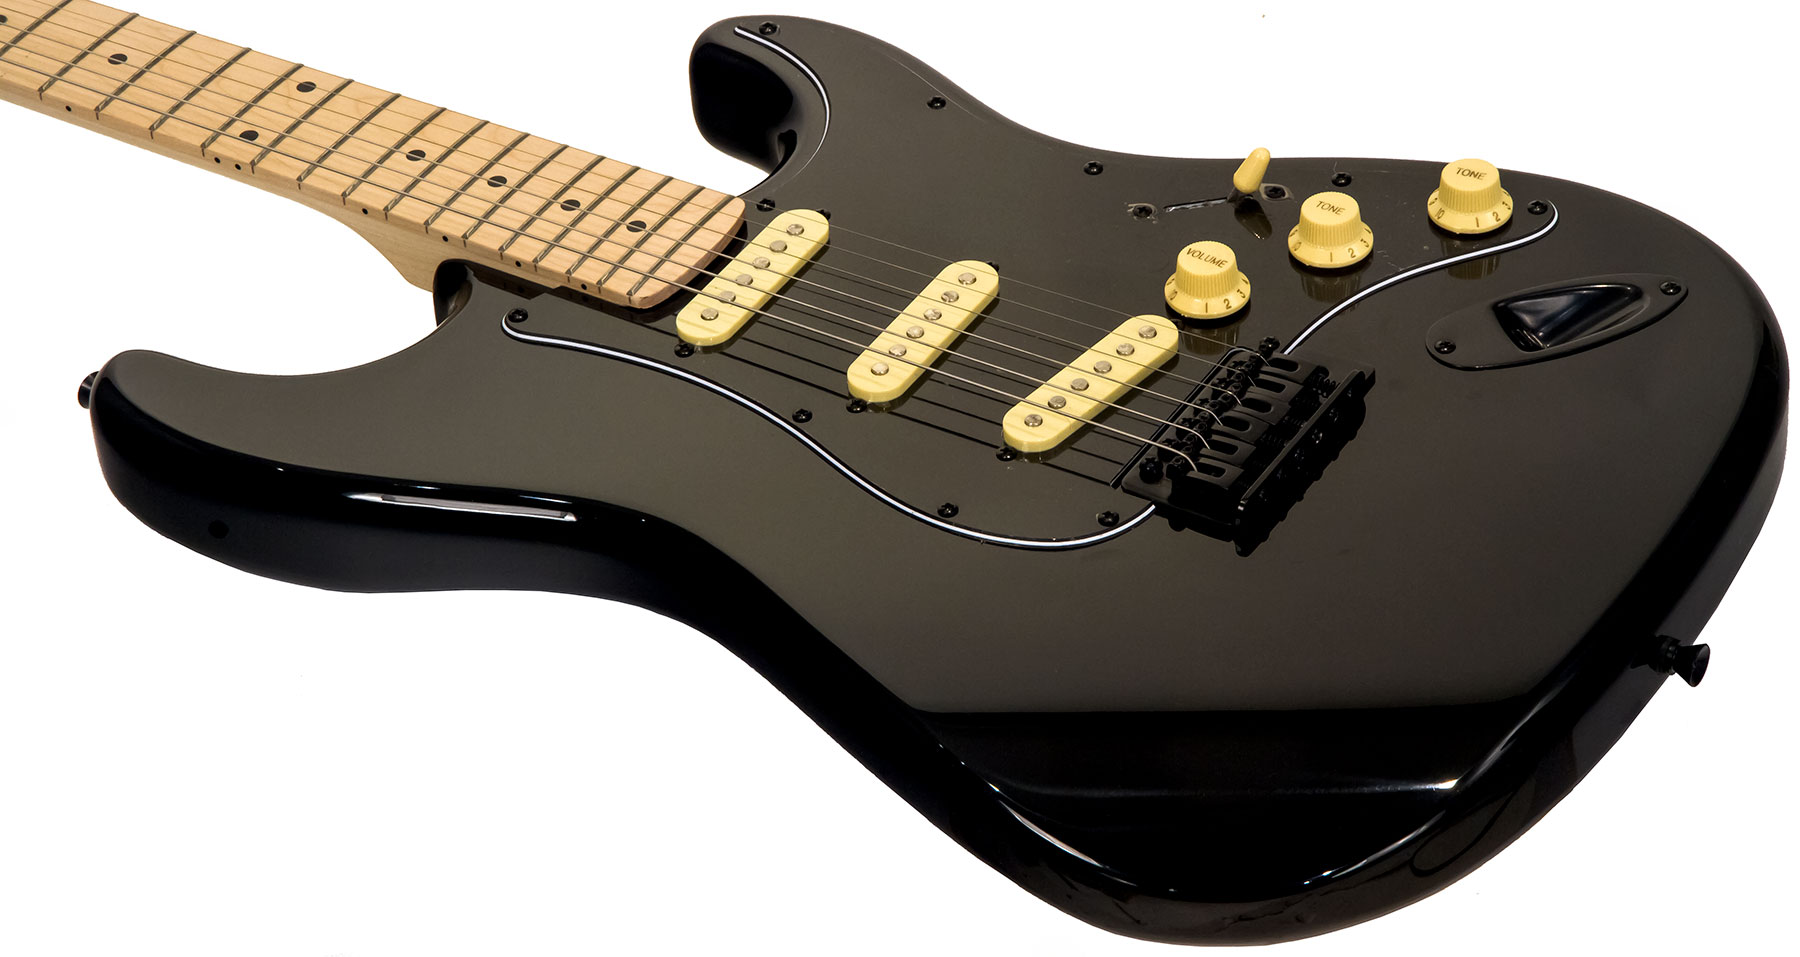 Eastone Str70 Gil Sss Trem Mn - Black - Str shape electric guitar - Variation 2